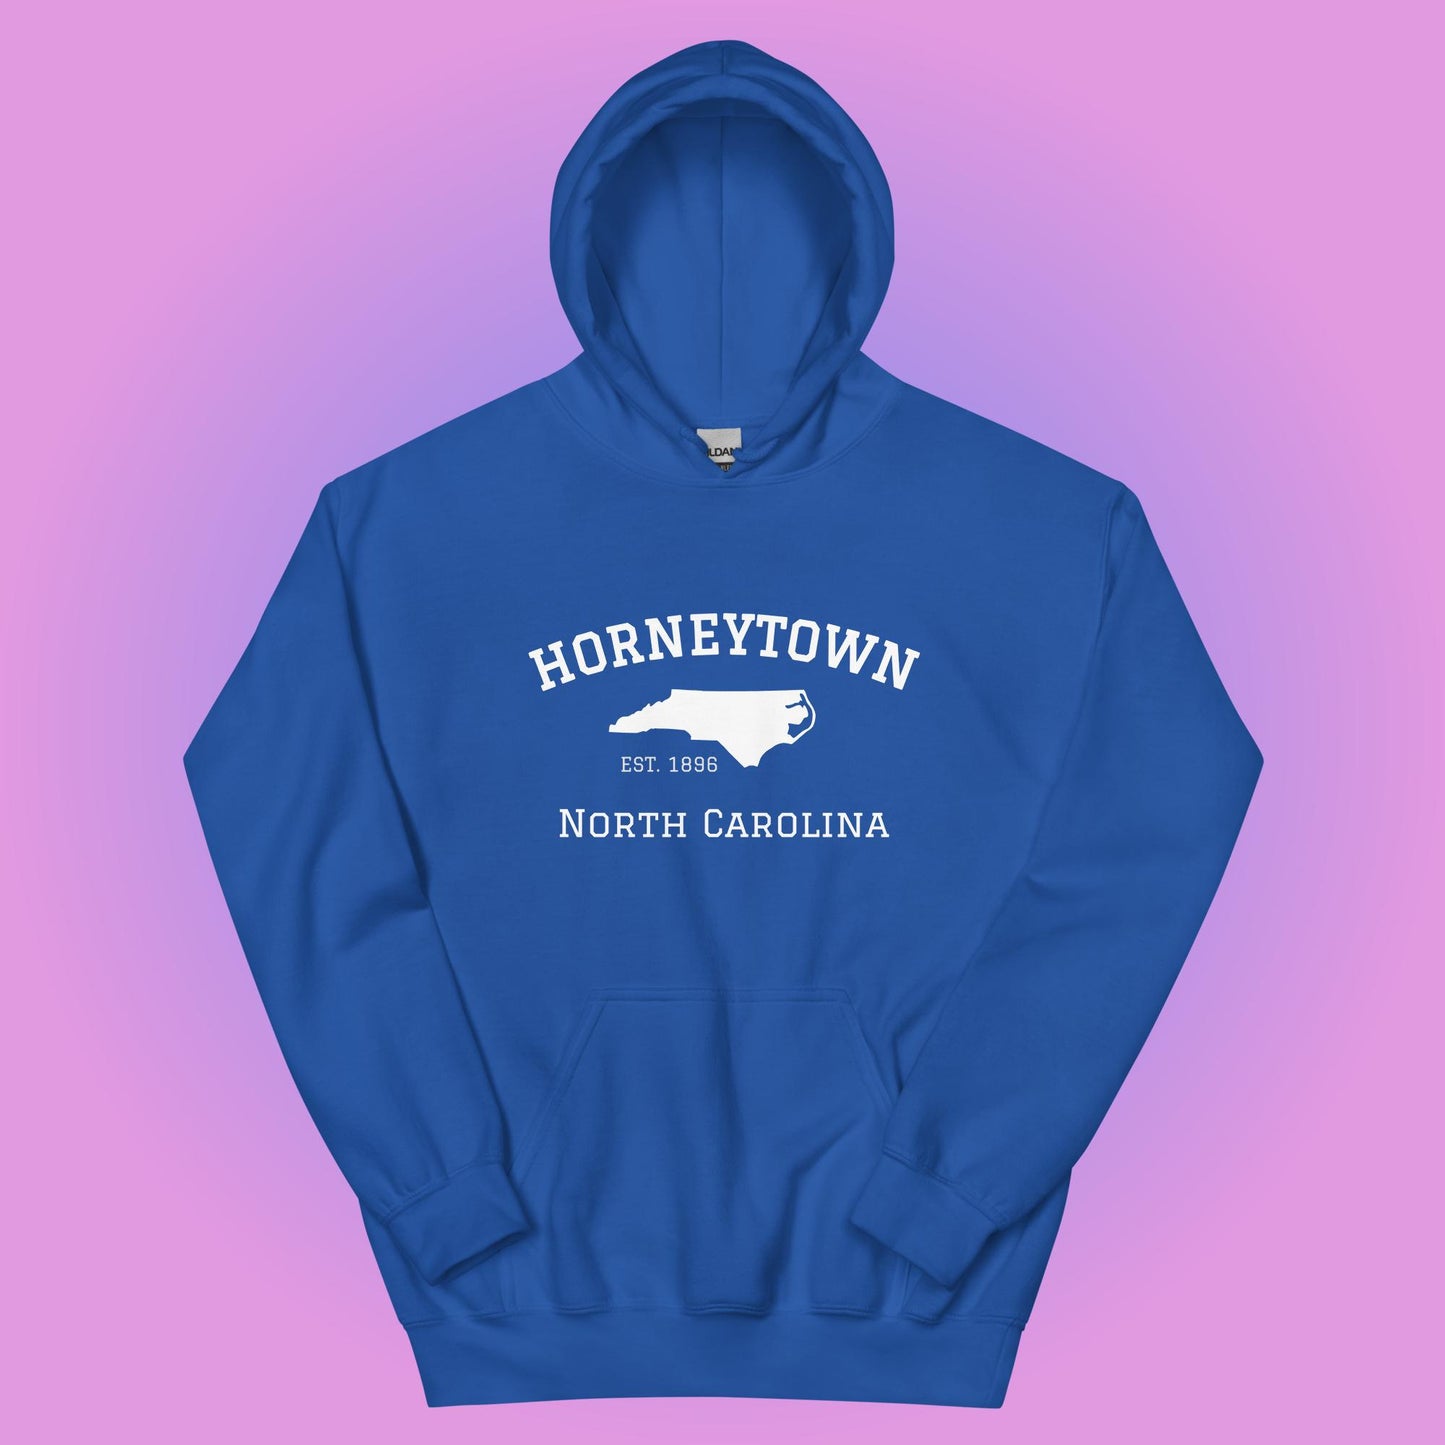 horneytown hoodie